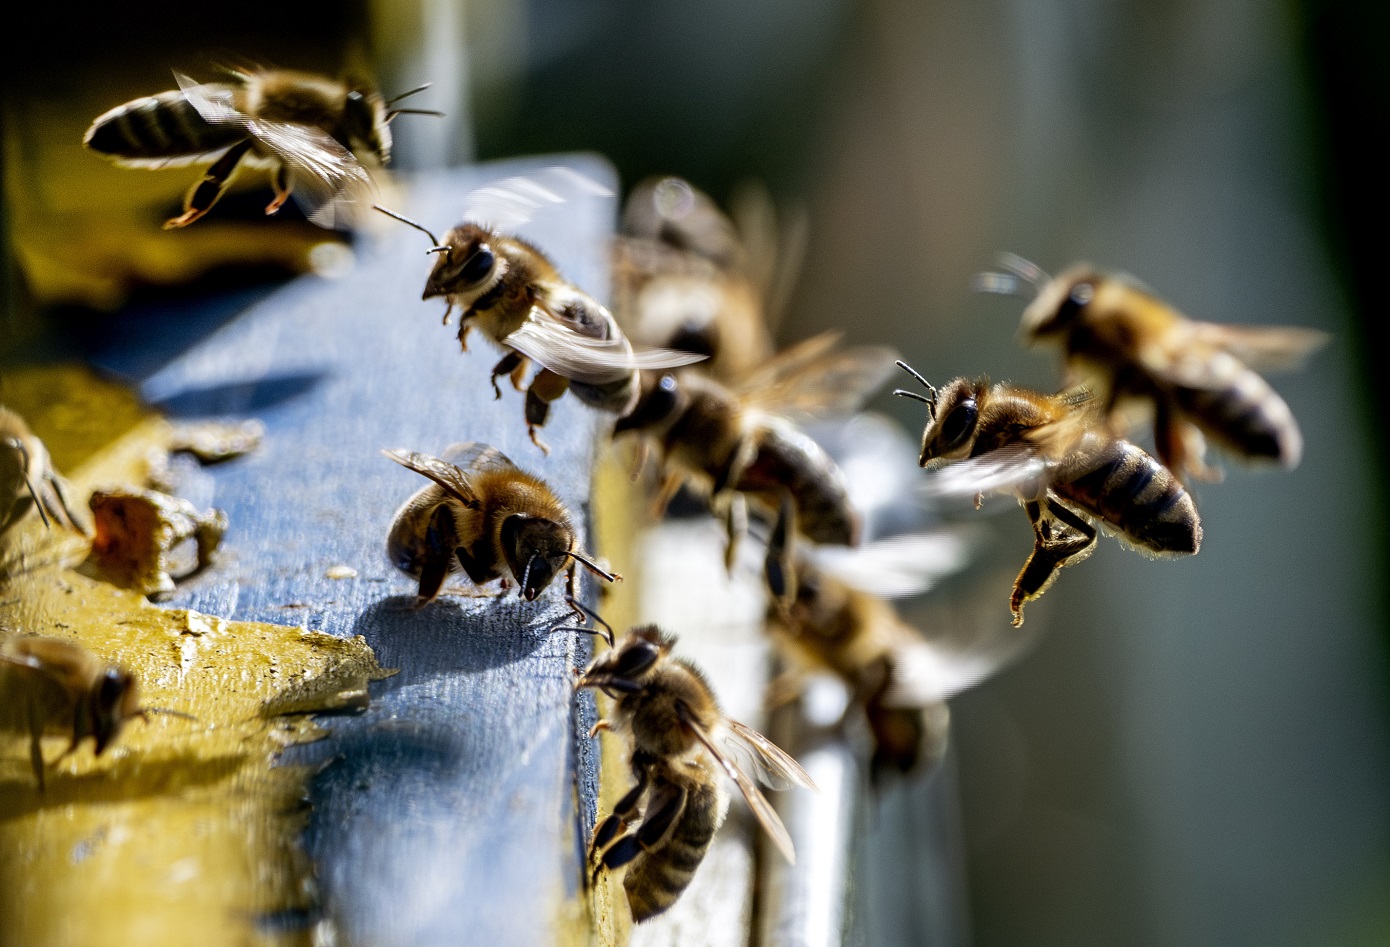 Μέλισσες επιτέθηκαν σε επιβάτες αυτοκινήτου στη Μυτιλήνη – Ένα άτομο χωρίς τις αισθήσεις του